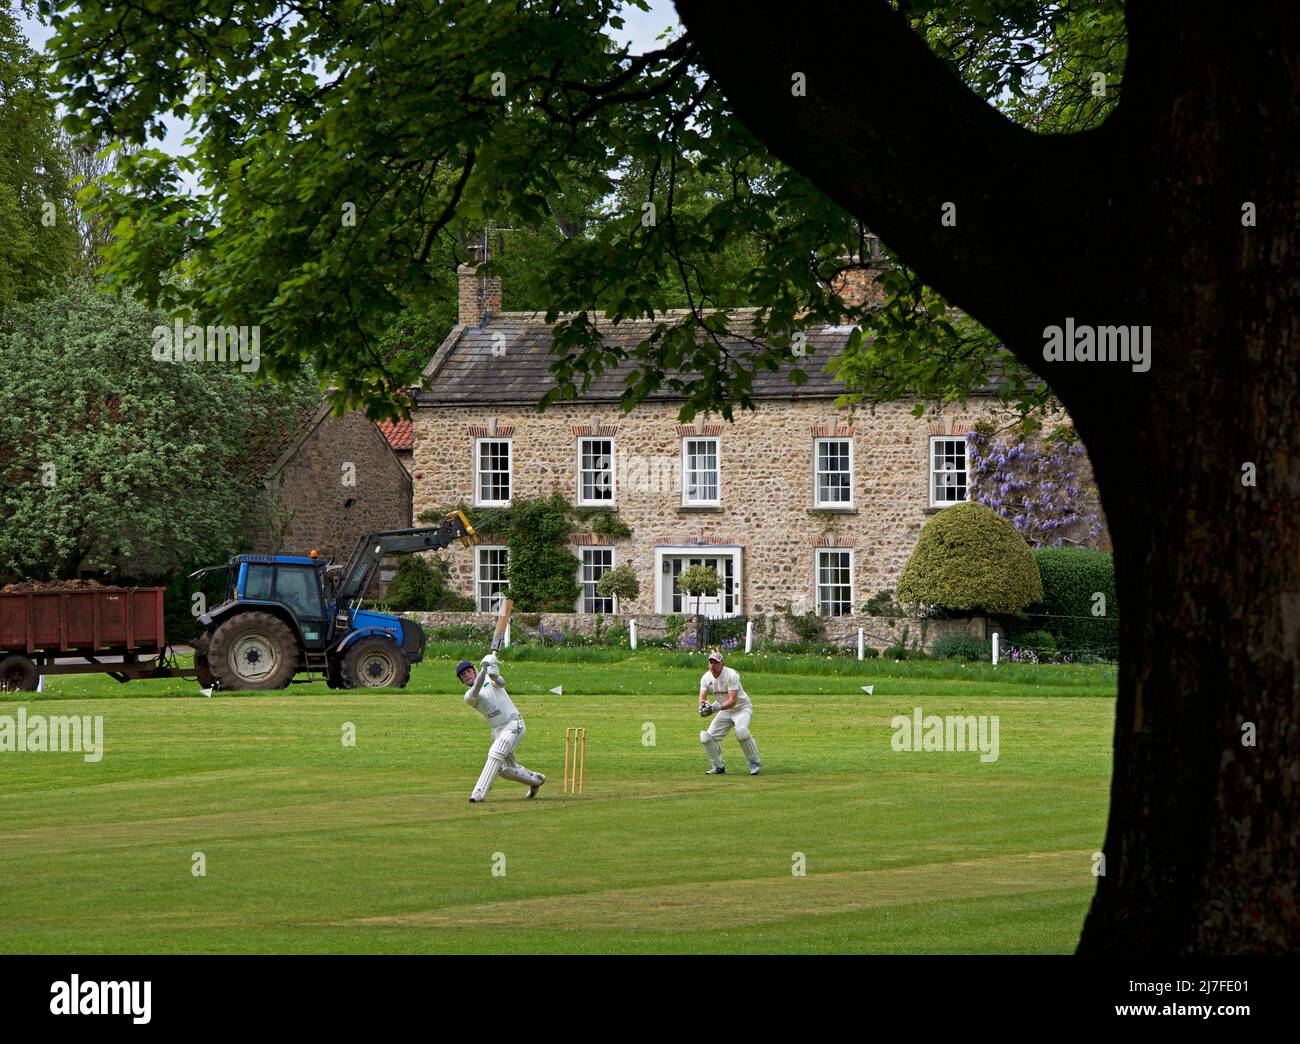 Cricket-Spiel in Arbeit in dem Dorf Crakehall, North Yorkshire, England Großbritannien Stockfoto